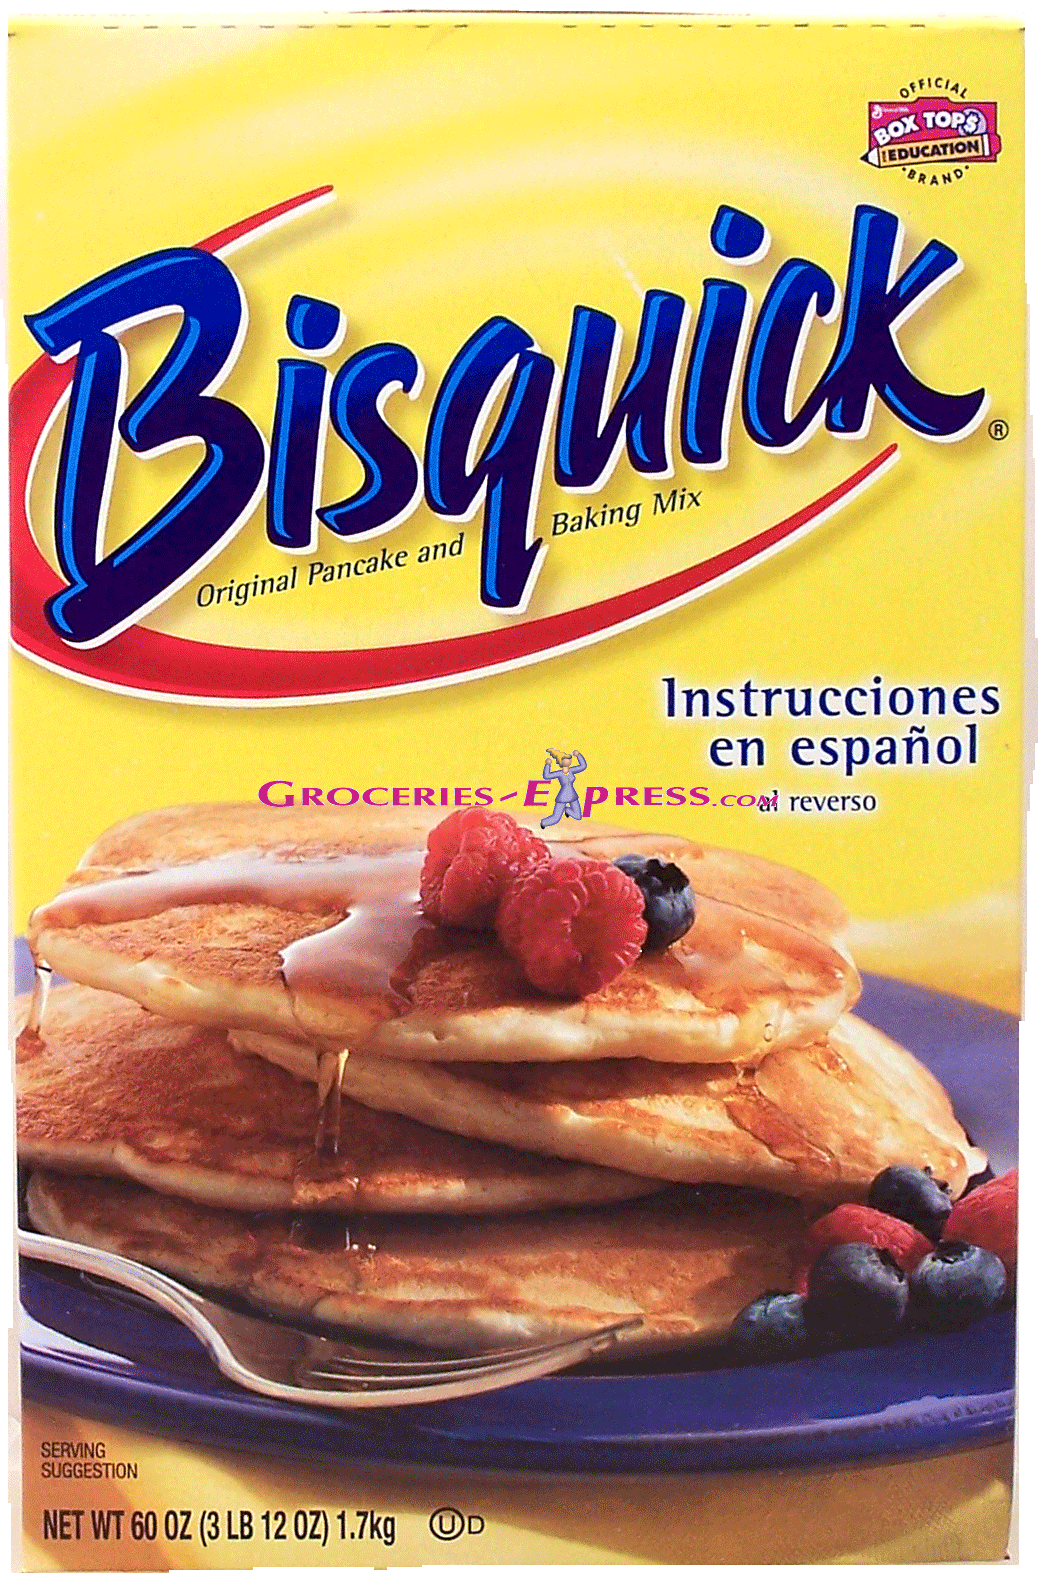 Bisquick Baking Mix original pancake and baking mix Full-Size Picture